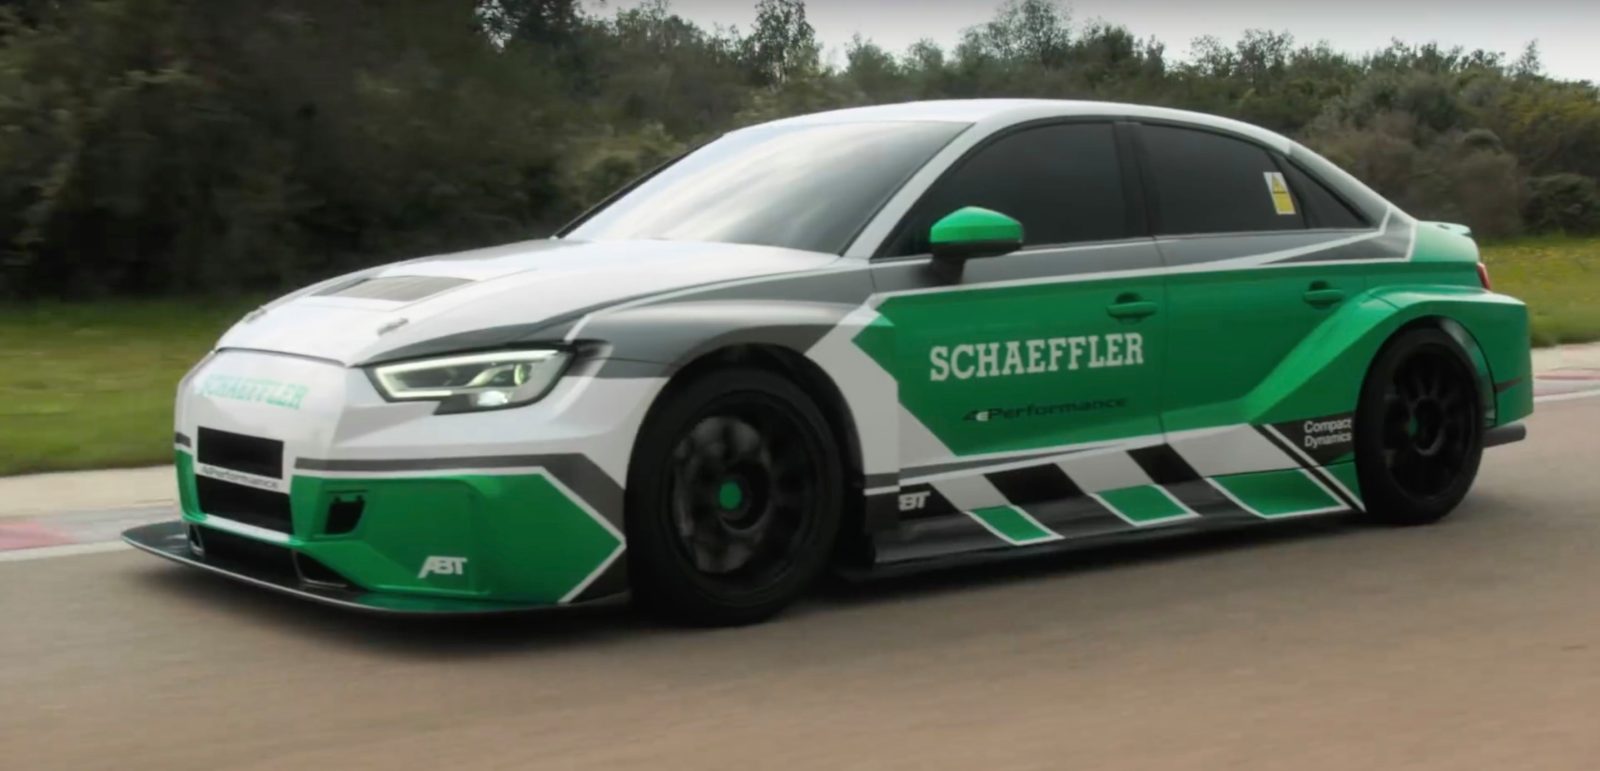 Schaeffler-éknál Audi átalakítás történt